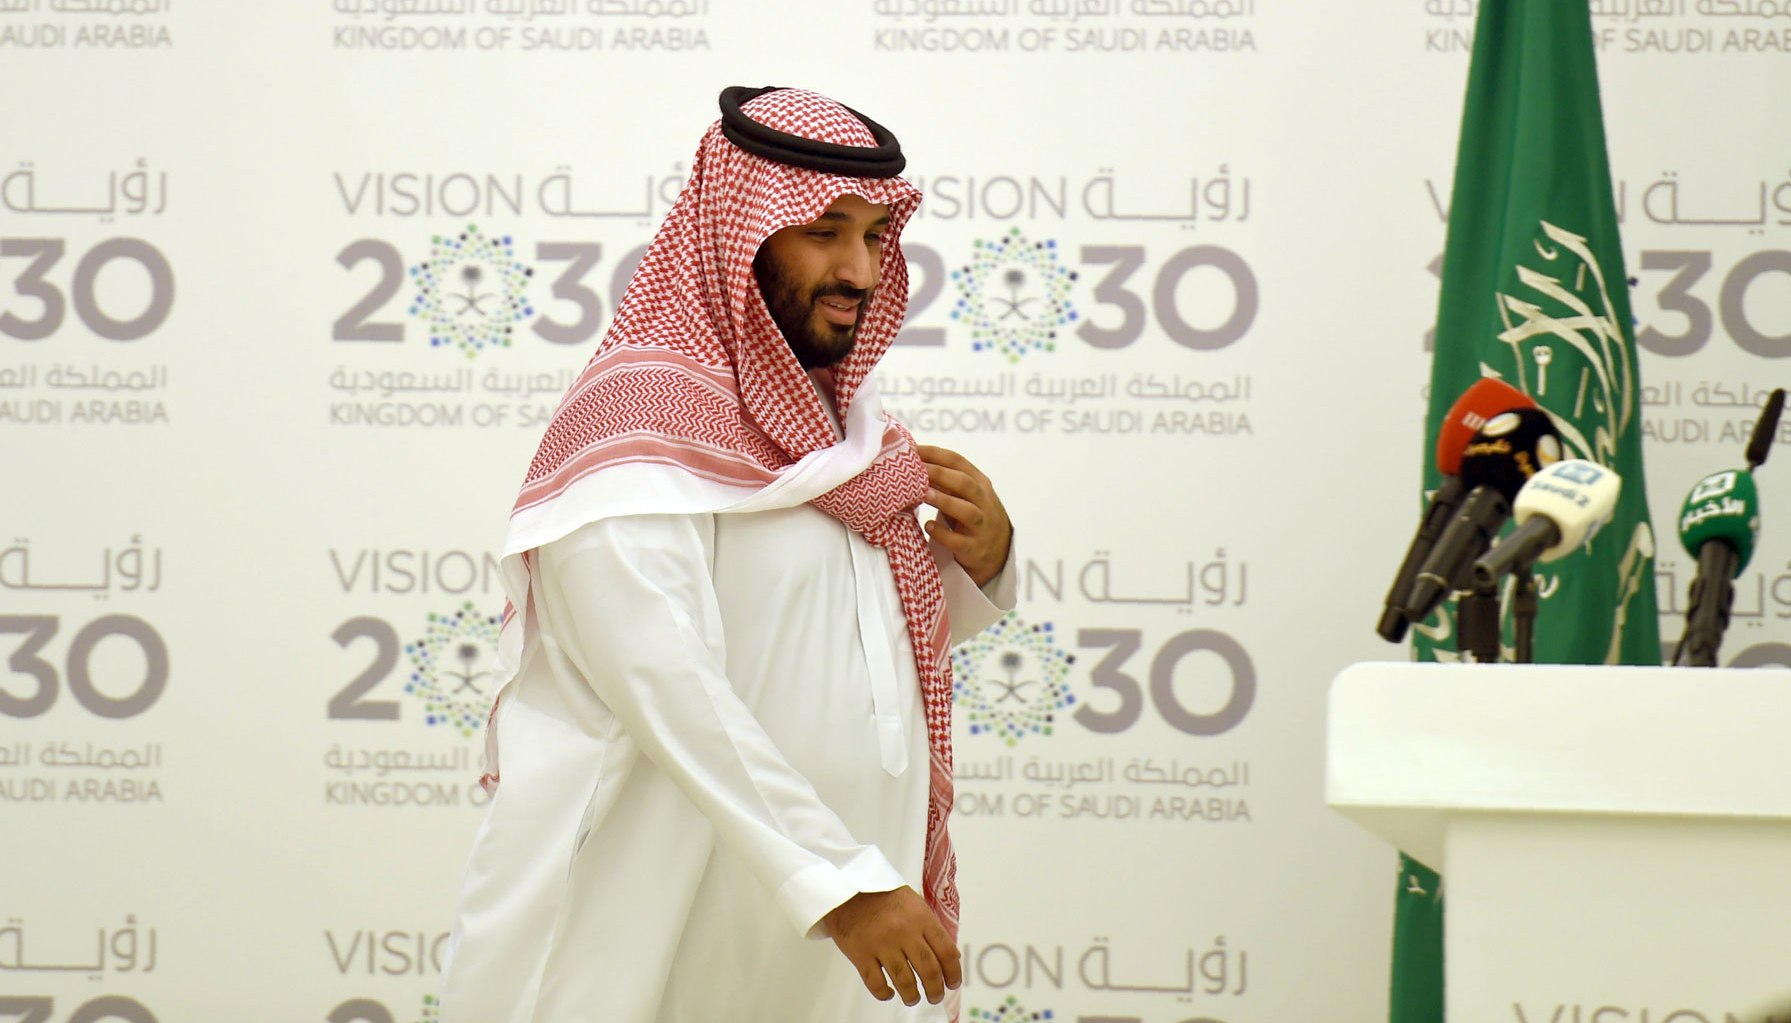 طرح أرامكو للاكتتاب العام يأتي ضمن خطة 'رؤية 2030' التي من المتوقع أن تحدث نقلة نوعية في السعودية